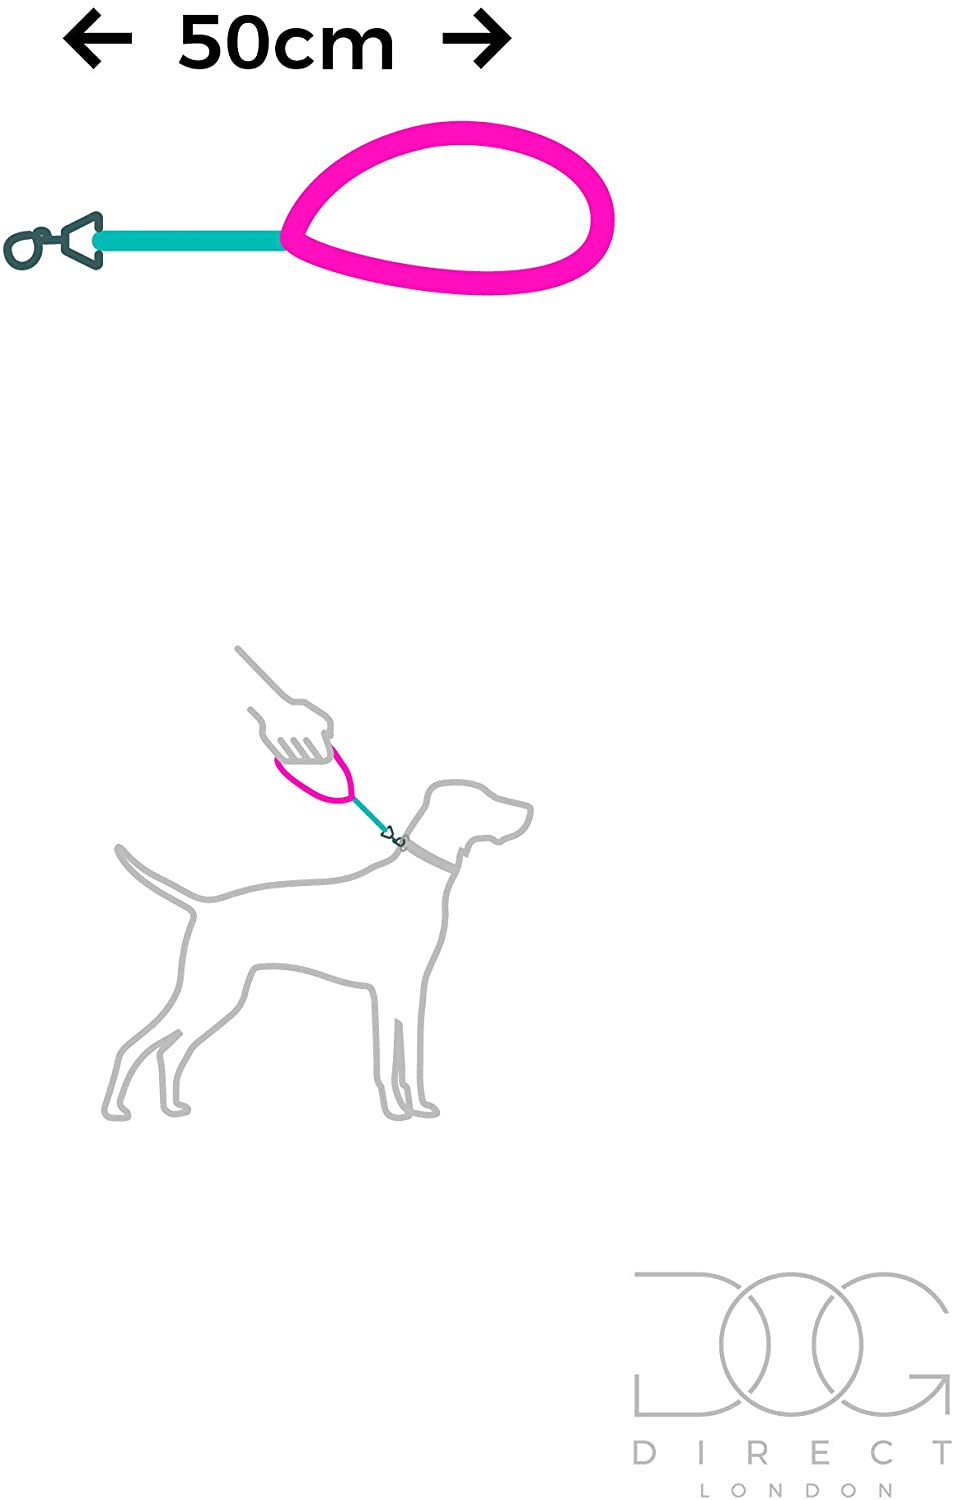  DogDirect London - Correa para Perro (Mango Corto, 50 cm, Relleno de Neopreno, Hecha a Mano, para Perros medianos, Grandes y Gigantes, Resistente hasta 500 kg), Color Negro y Rojo 